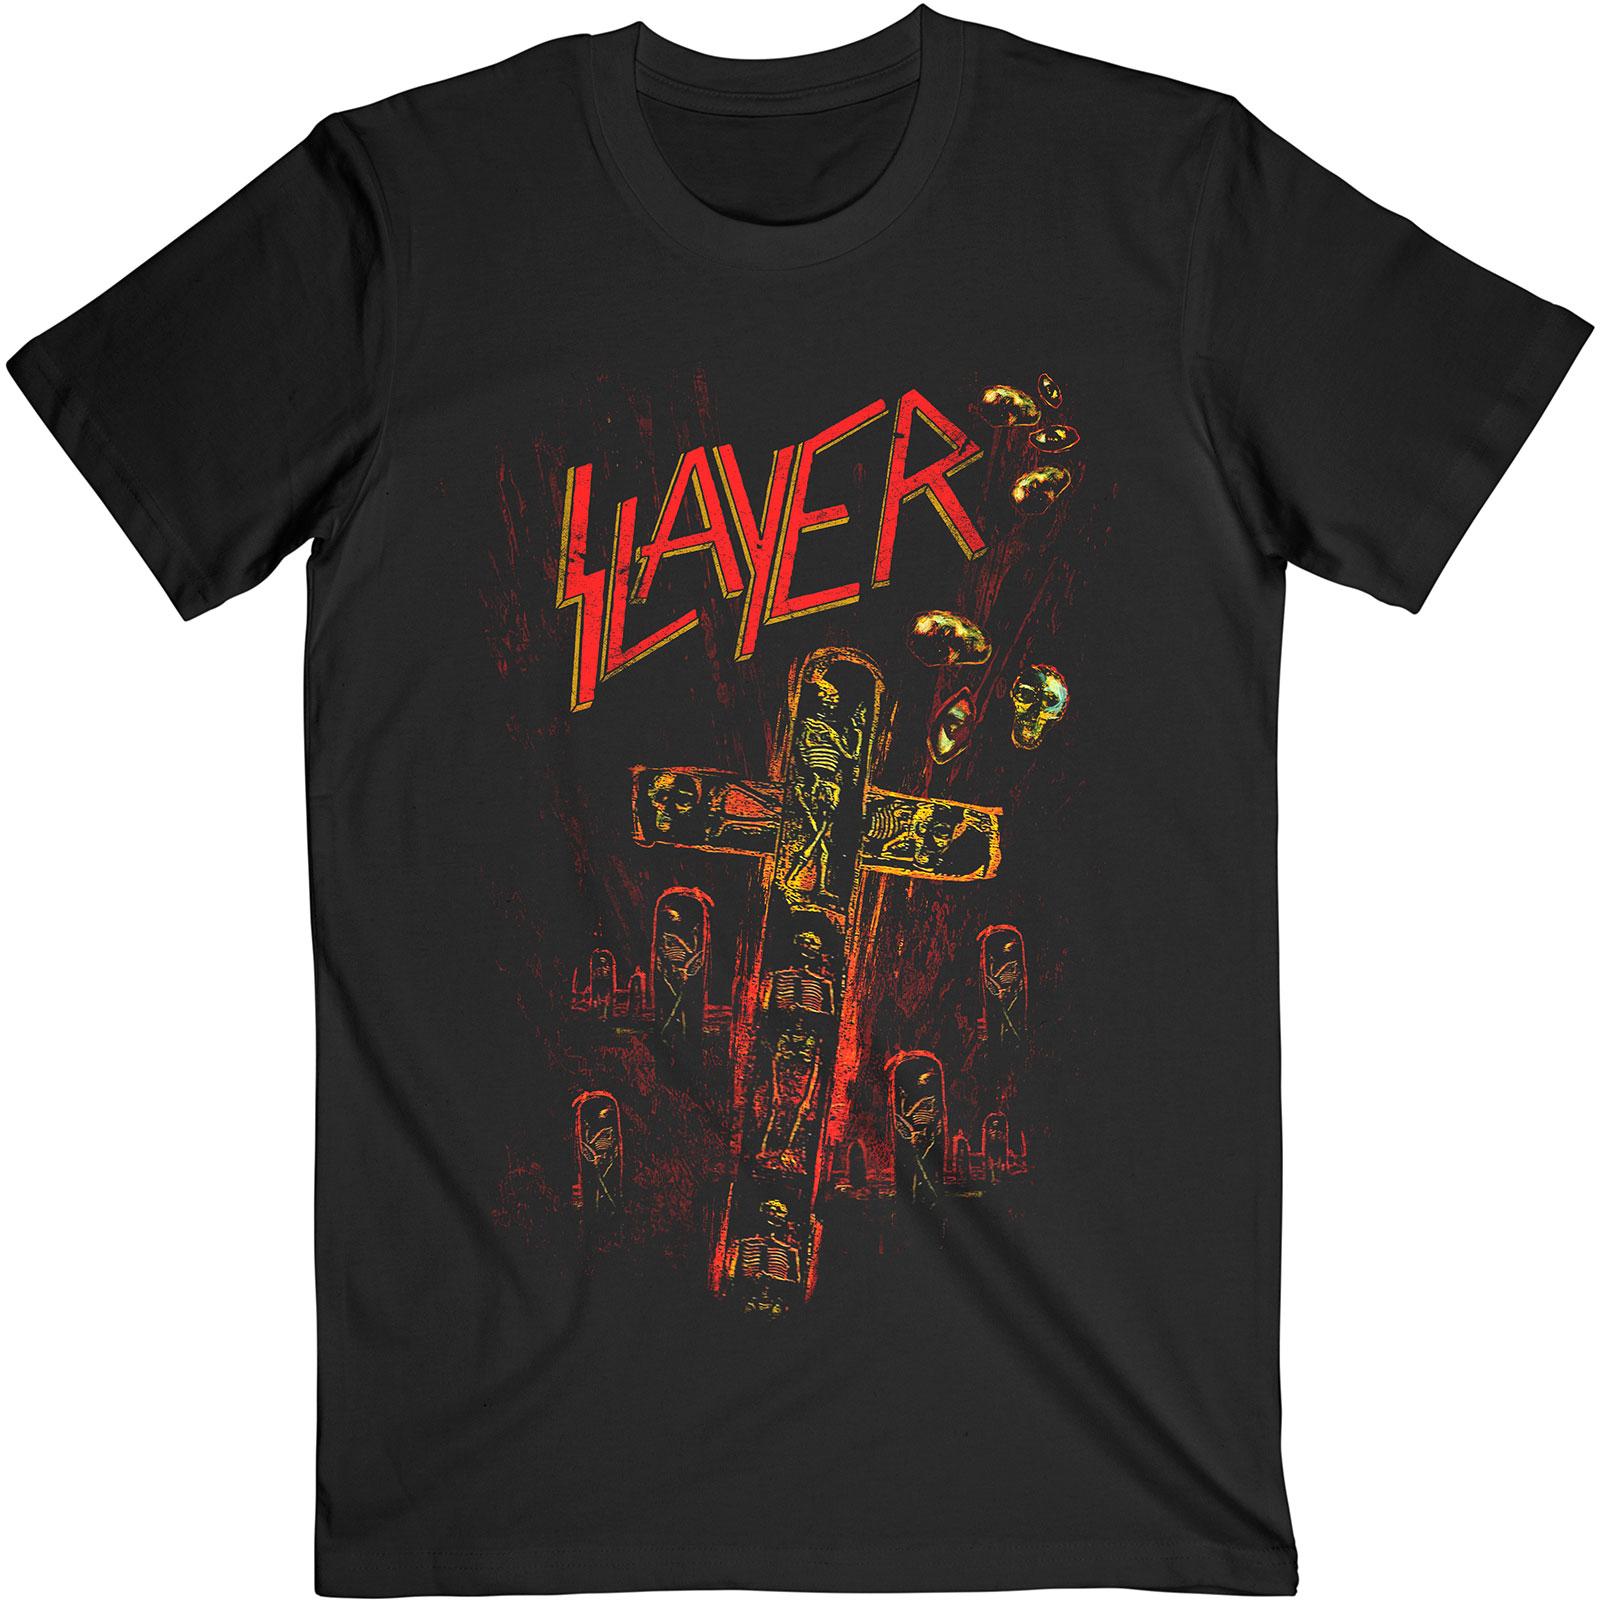 (スレイヤー) Slayer オフィシャル商品 ユニセックス Blood Red Tシャツ 半袖 トップス 【海外通販】